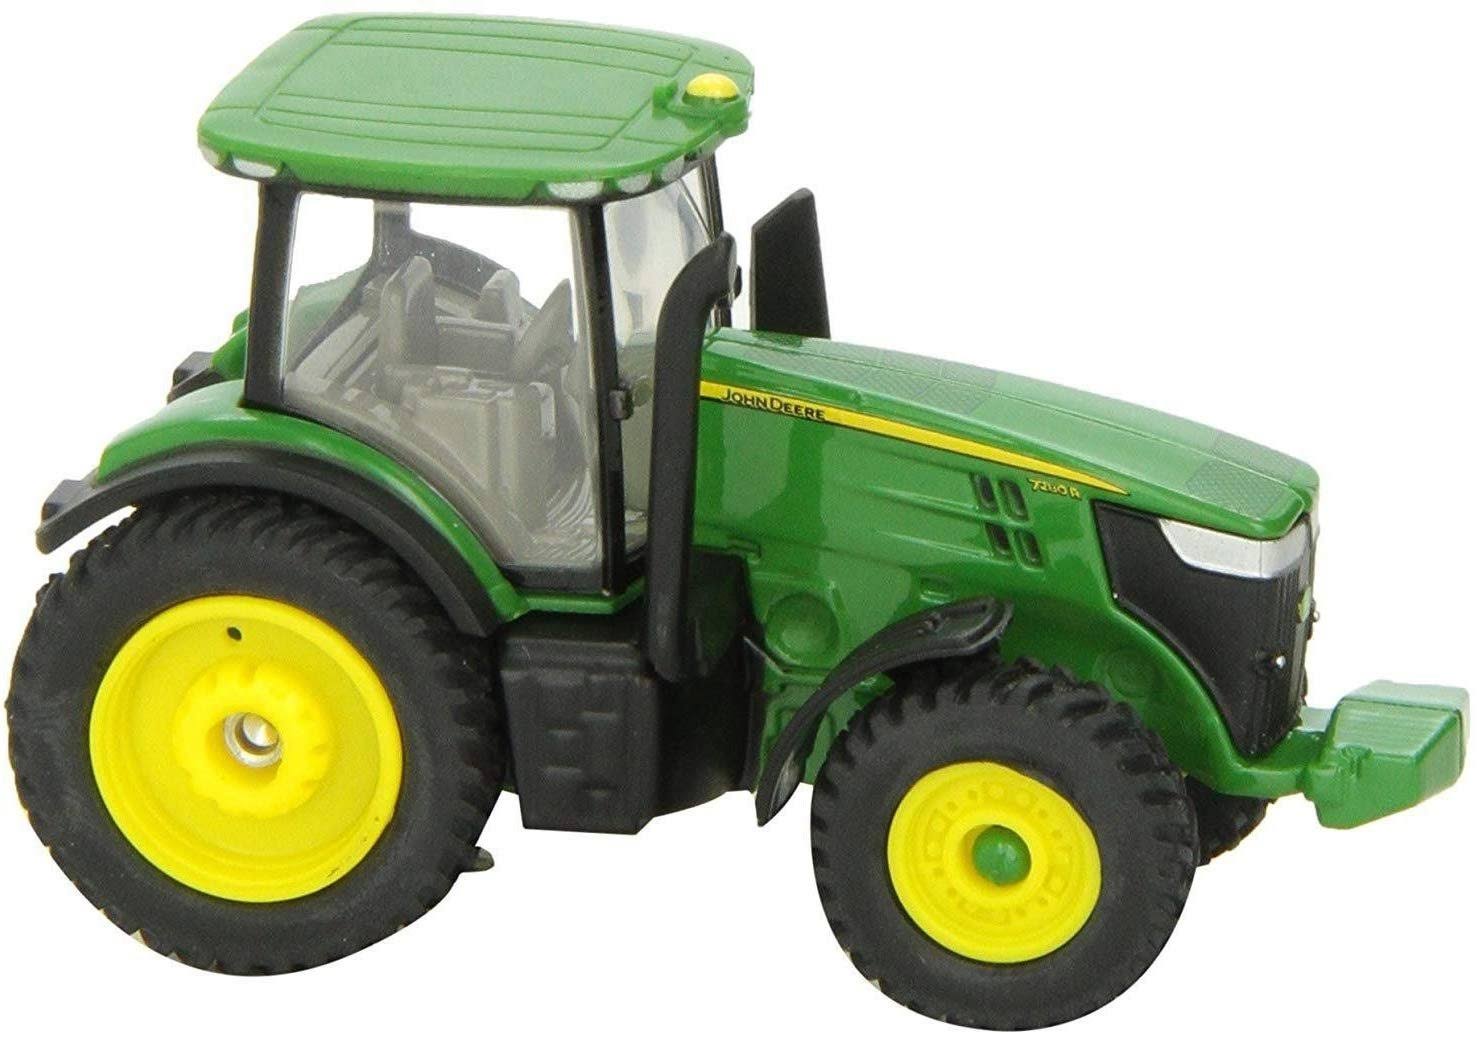 John Deere 1:64 7280r Tractor